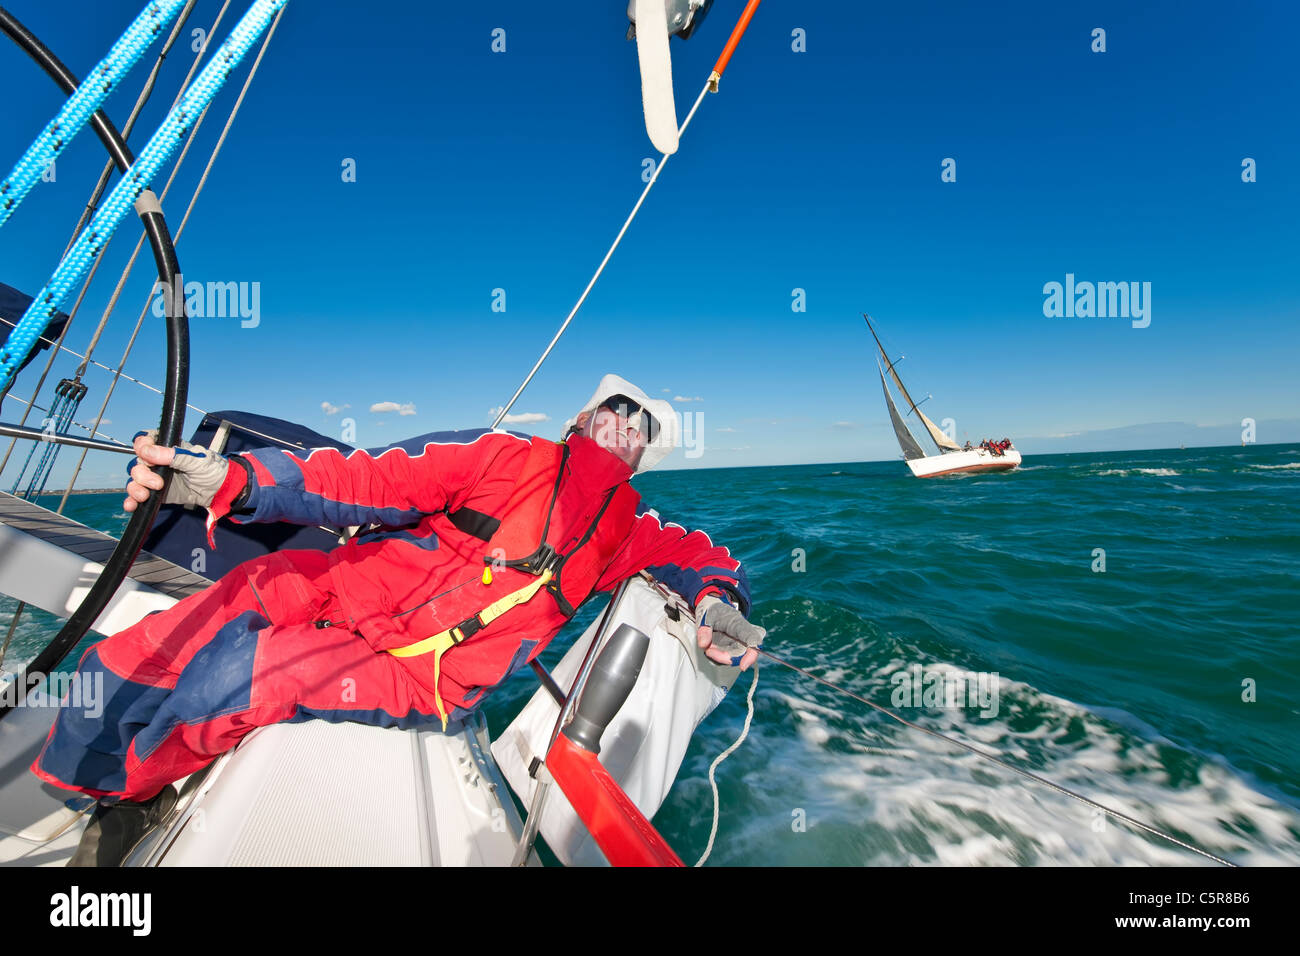 Captain steering Ocean going yacht in race Stock Photo